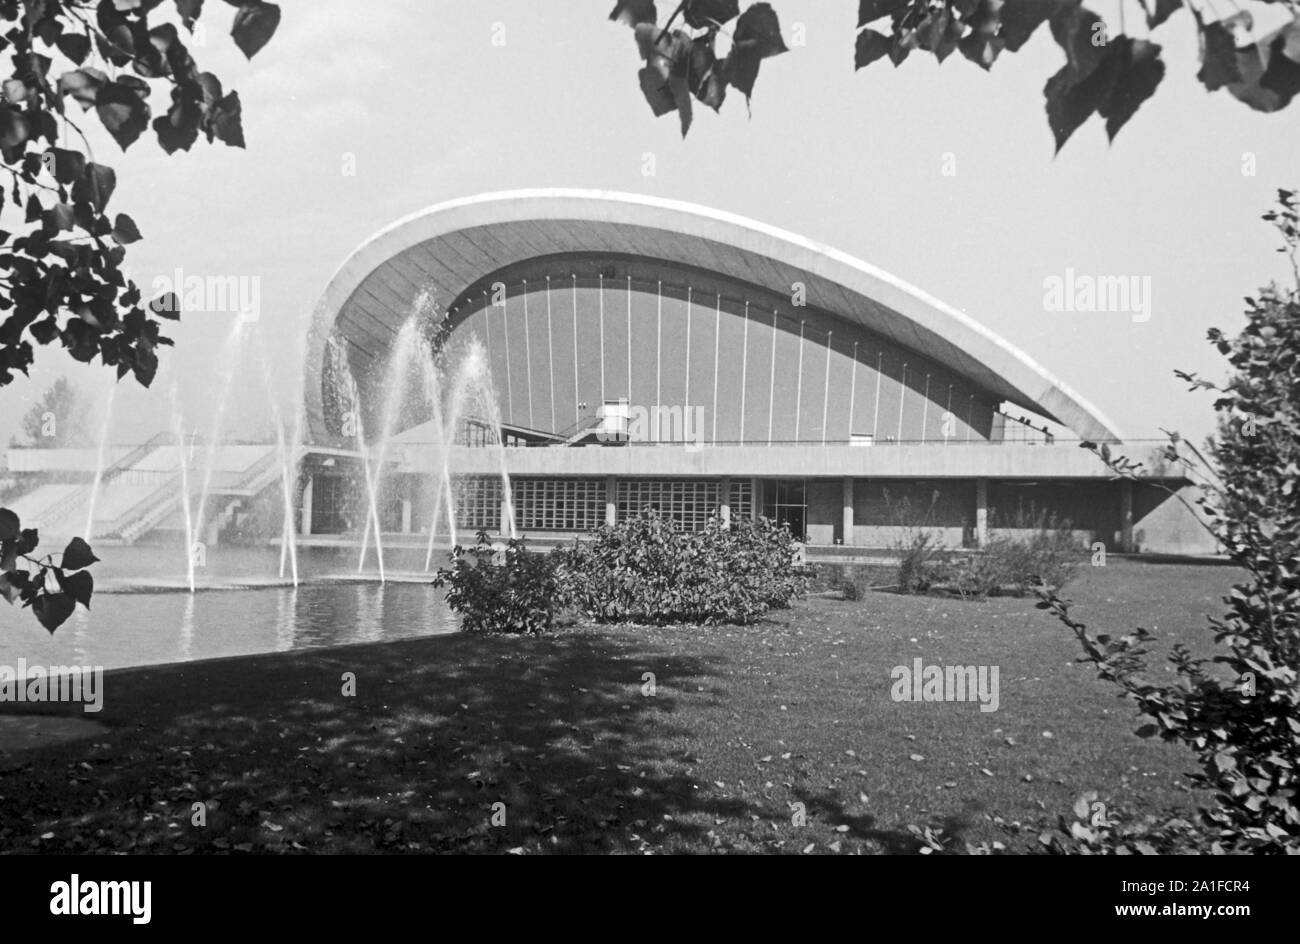 Kongresshalle an der John Foster Dulles Allee im Ortsteil Tiergarten in Berlin, Deutschland 1962 sterben. Kongress- und Veranstaltungshalle am Tiergarten in Berlin, Deutschland 1962. Stockfoto